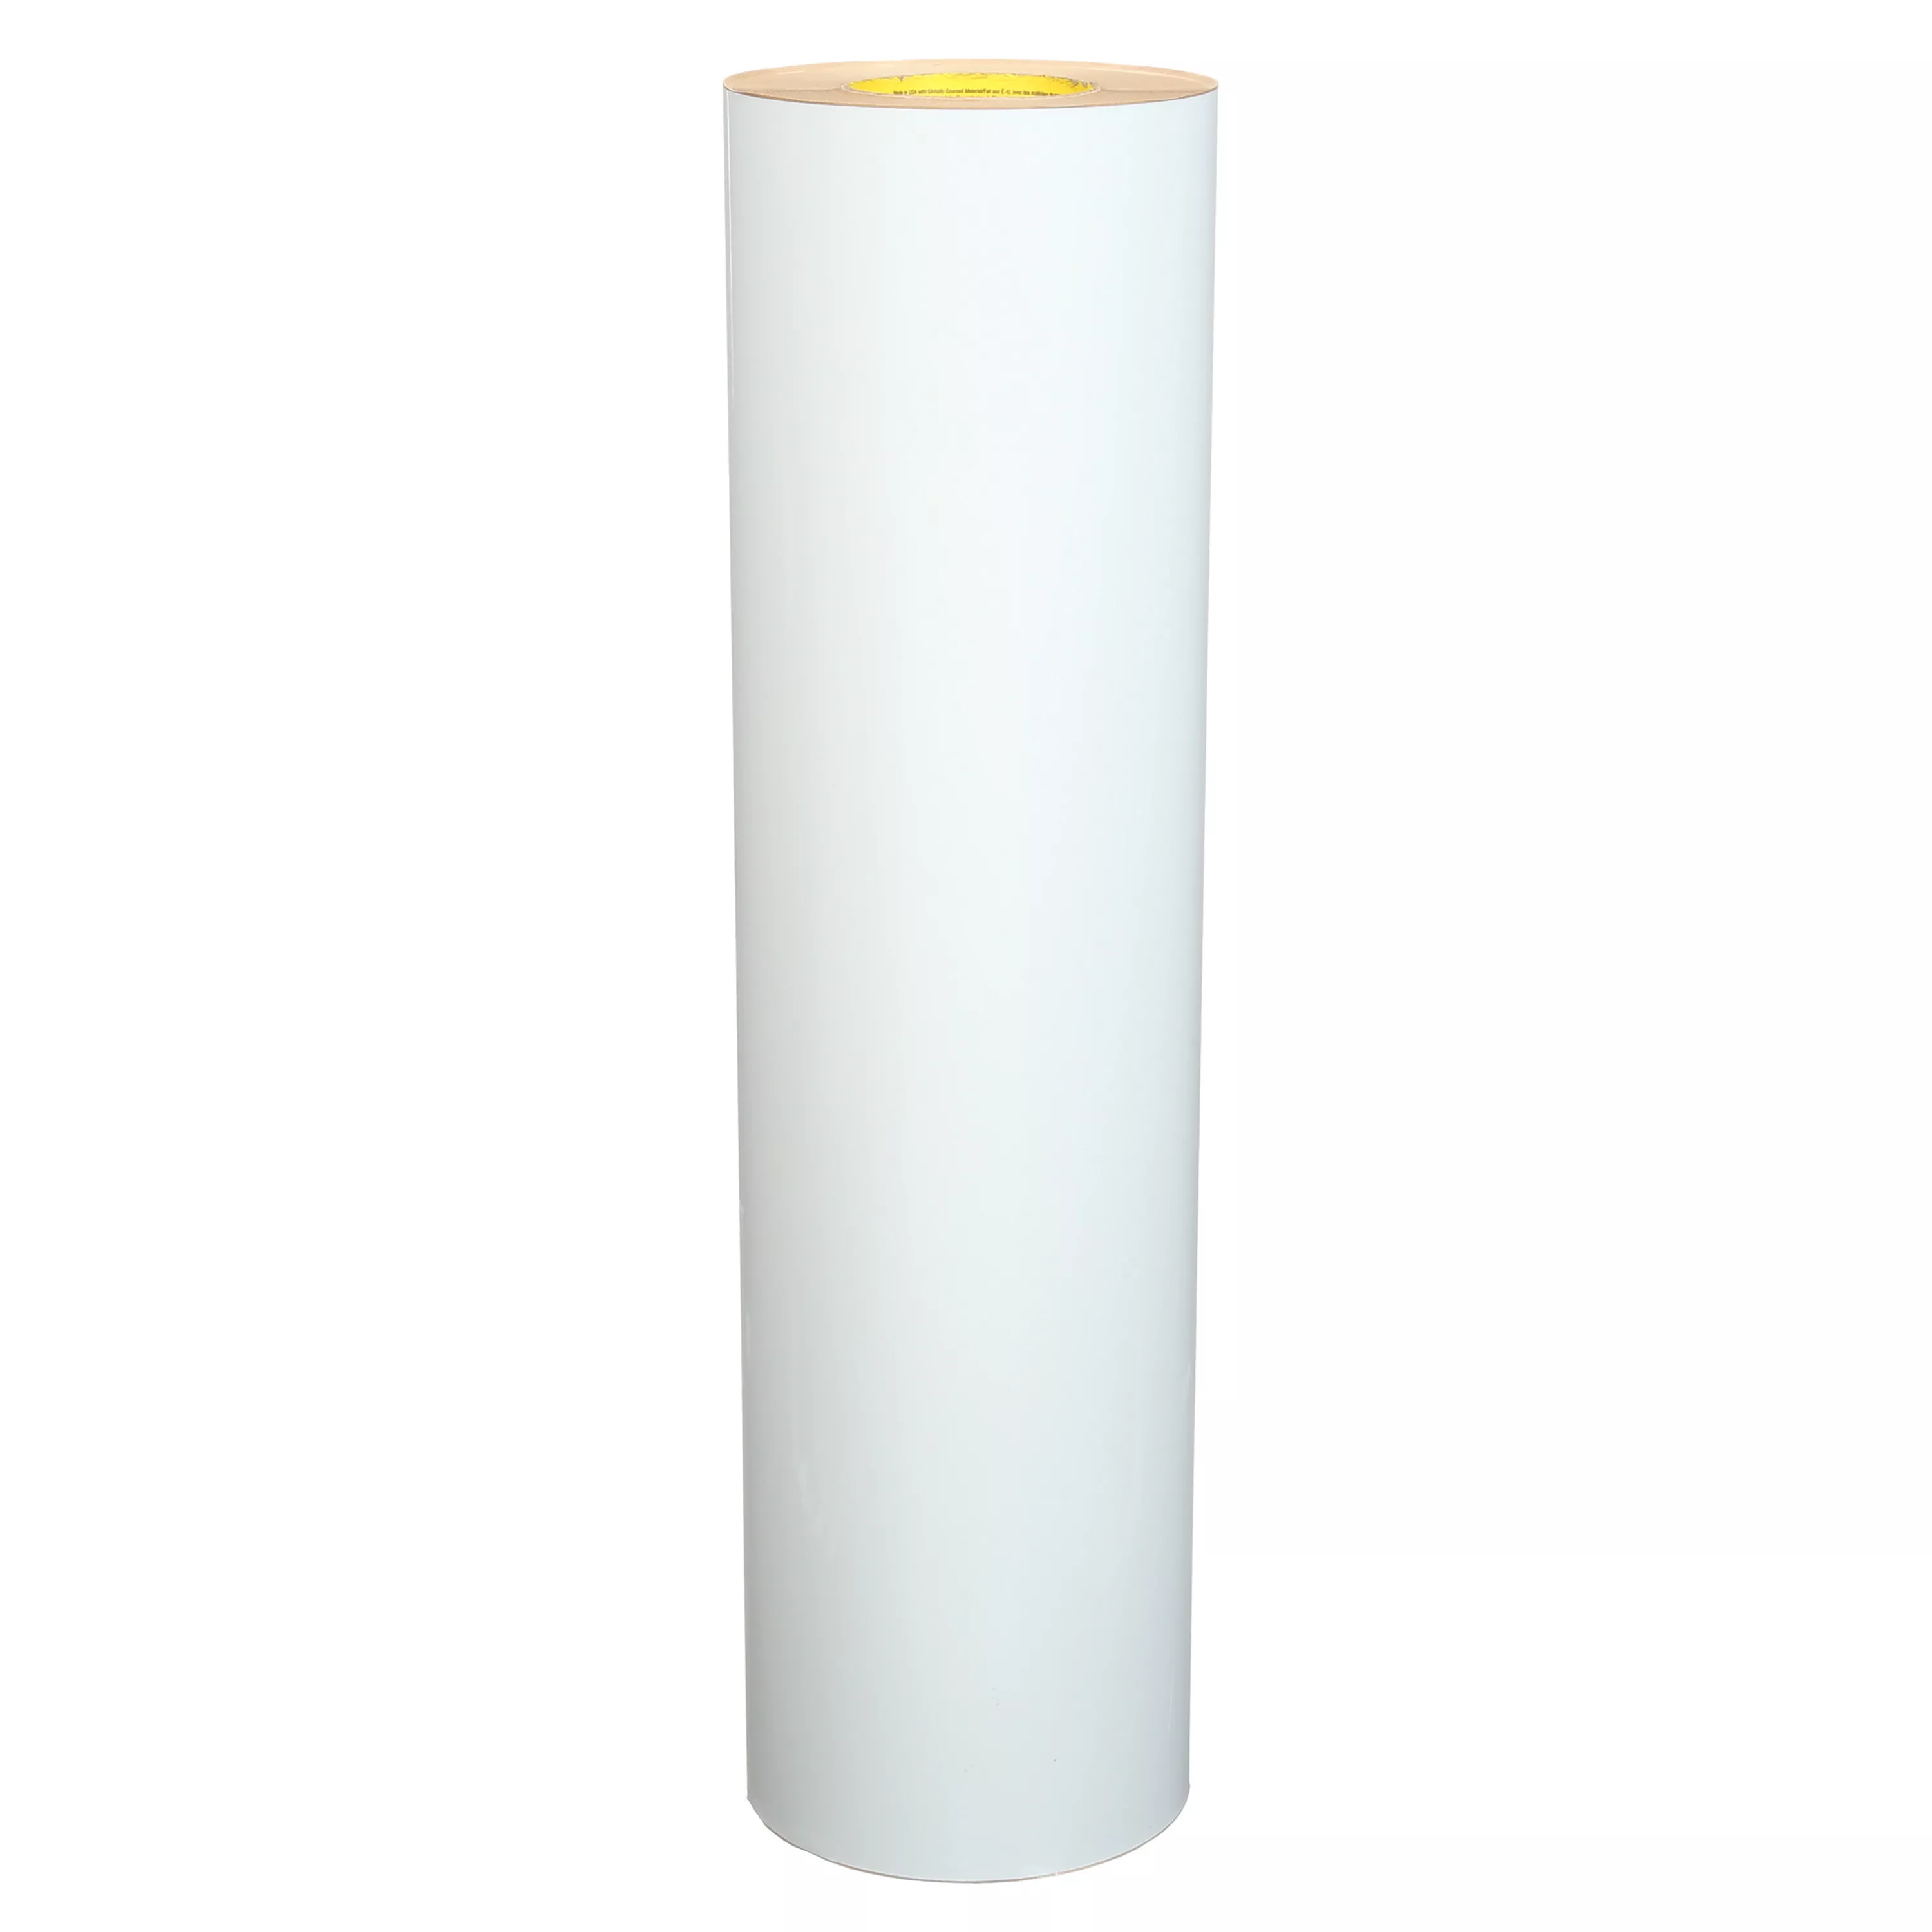 3M™ VentureClad™ Insulation Jacketing Tape 1577CW-WM, White, 23 in x 50
yd, 1 Roll/Case